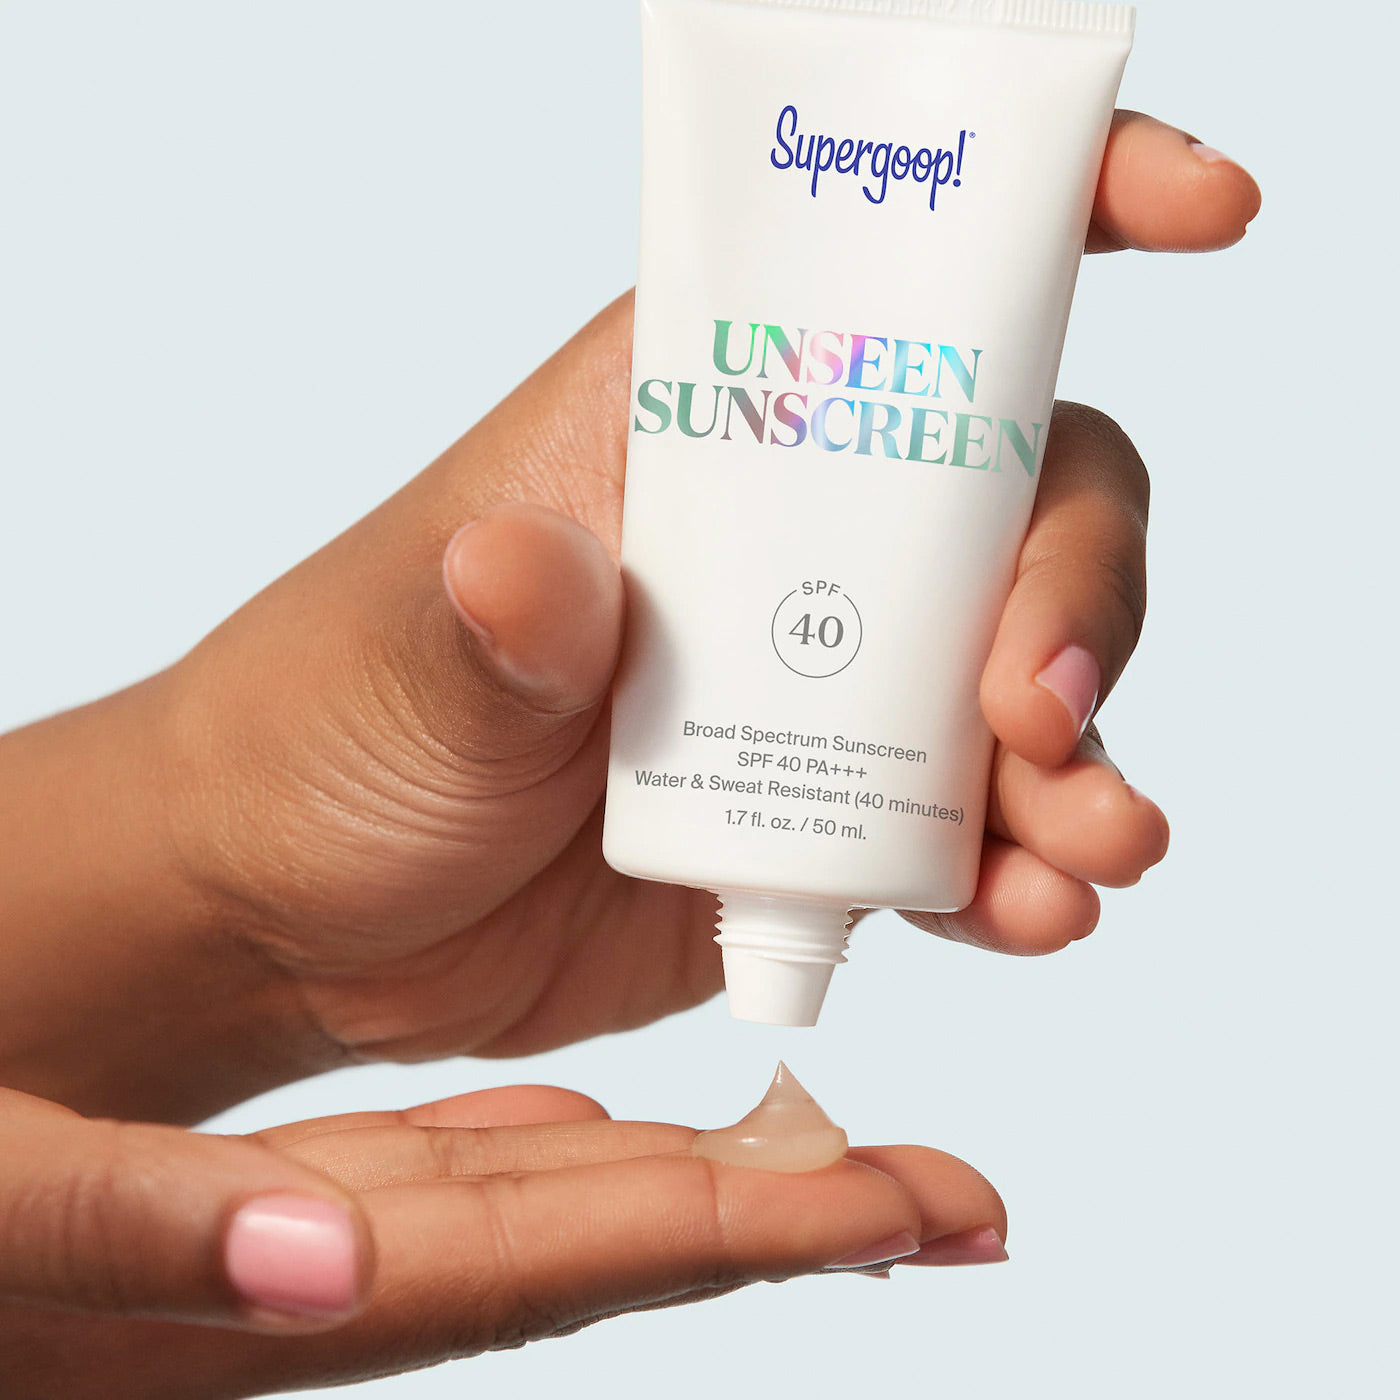 Supergoop! Unseen Sunscreen SPF 40 PA+++ 50 ml